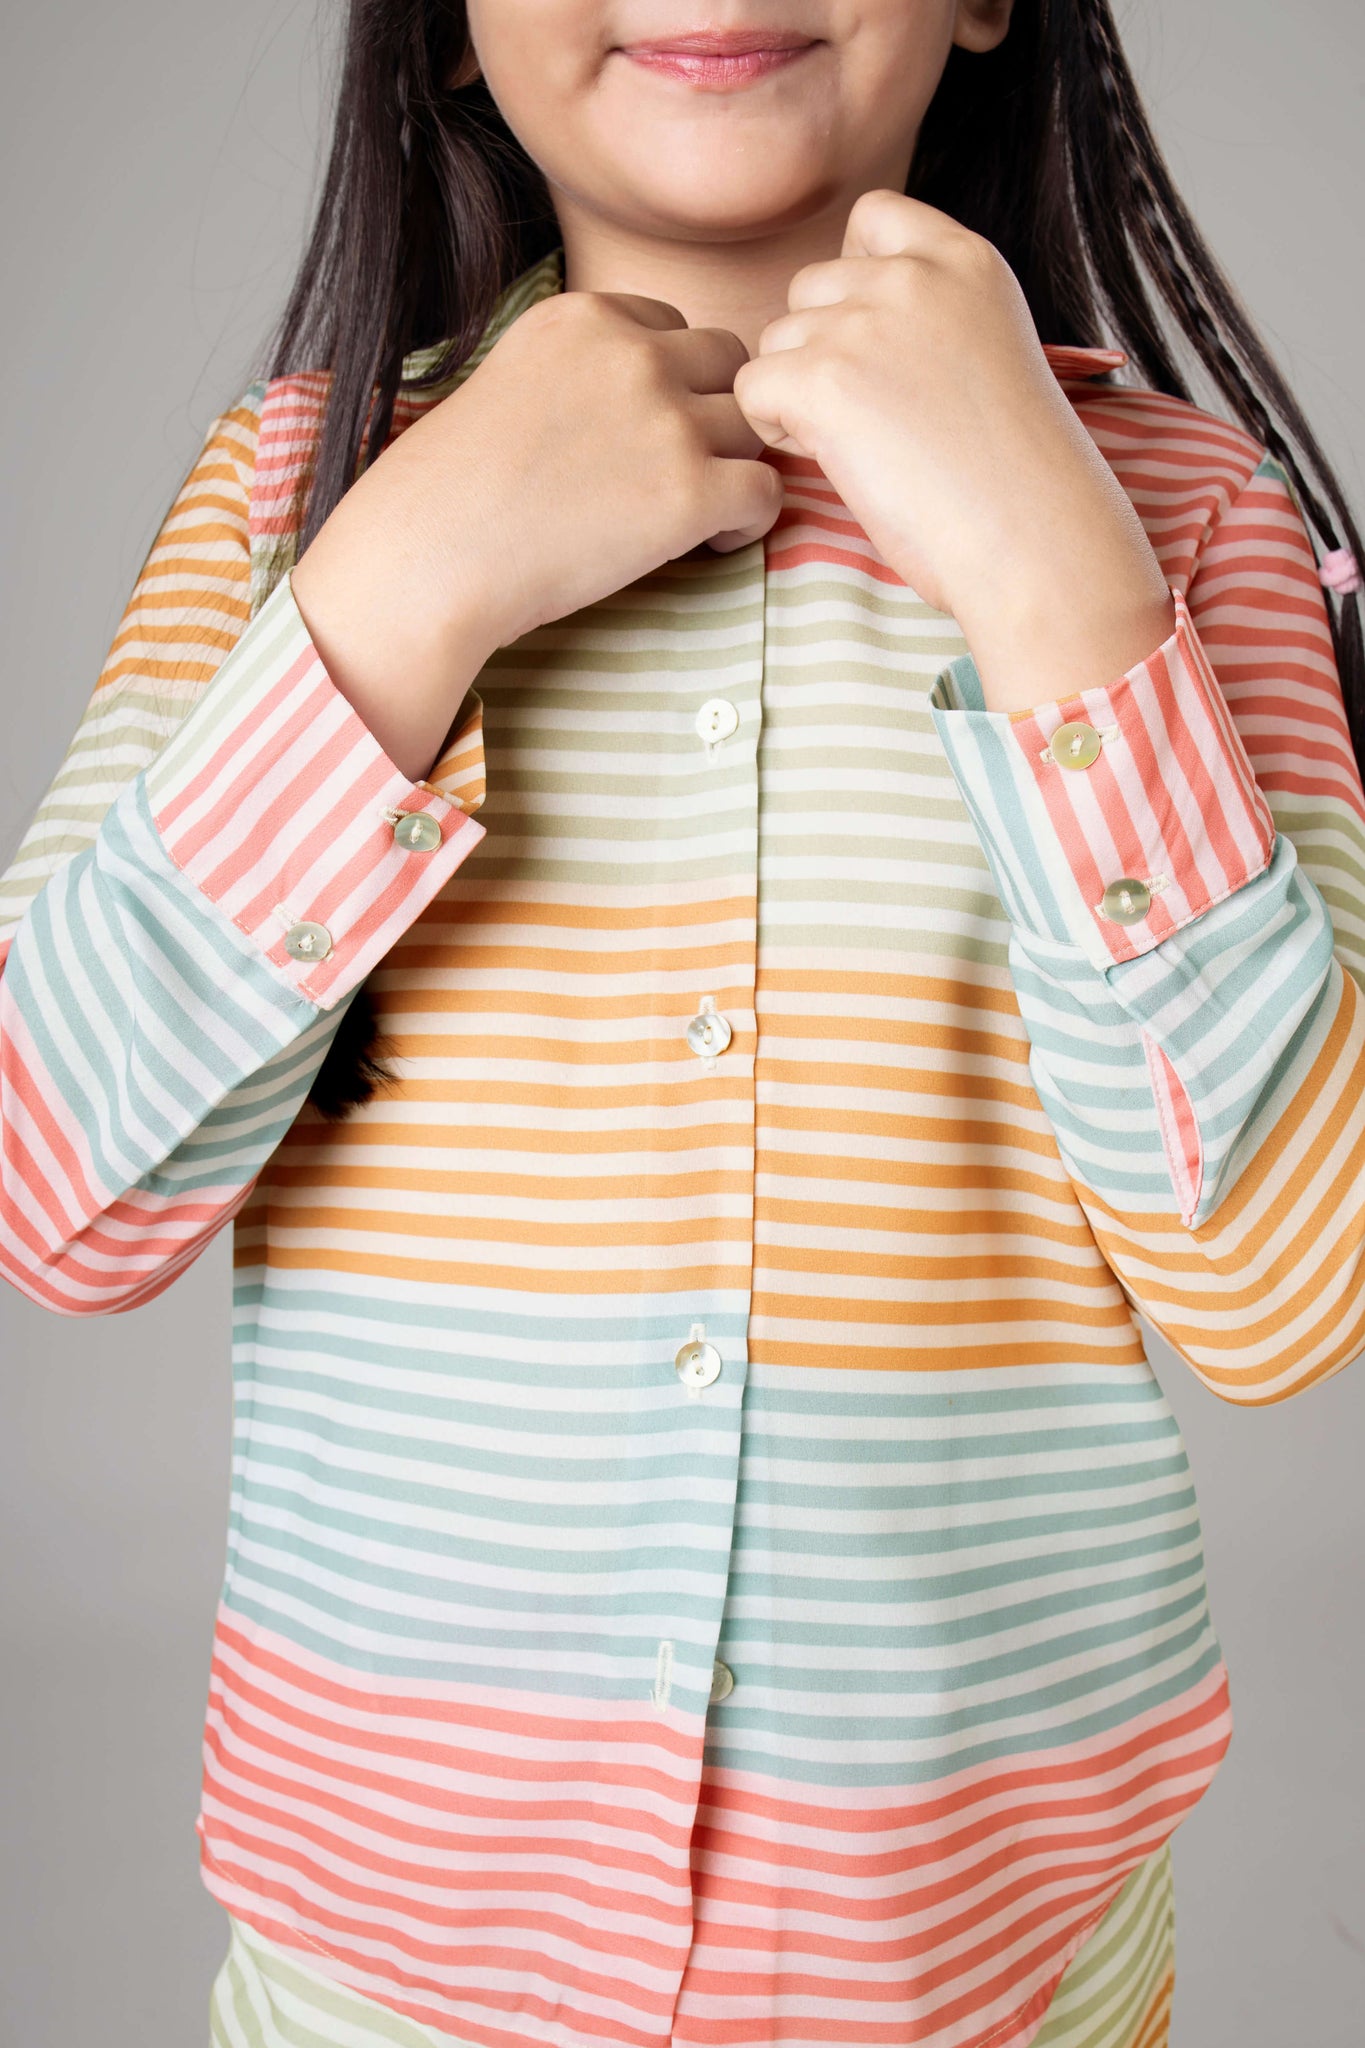 Trendy Stripes Shirt For Girls